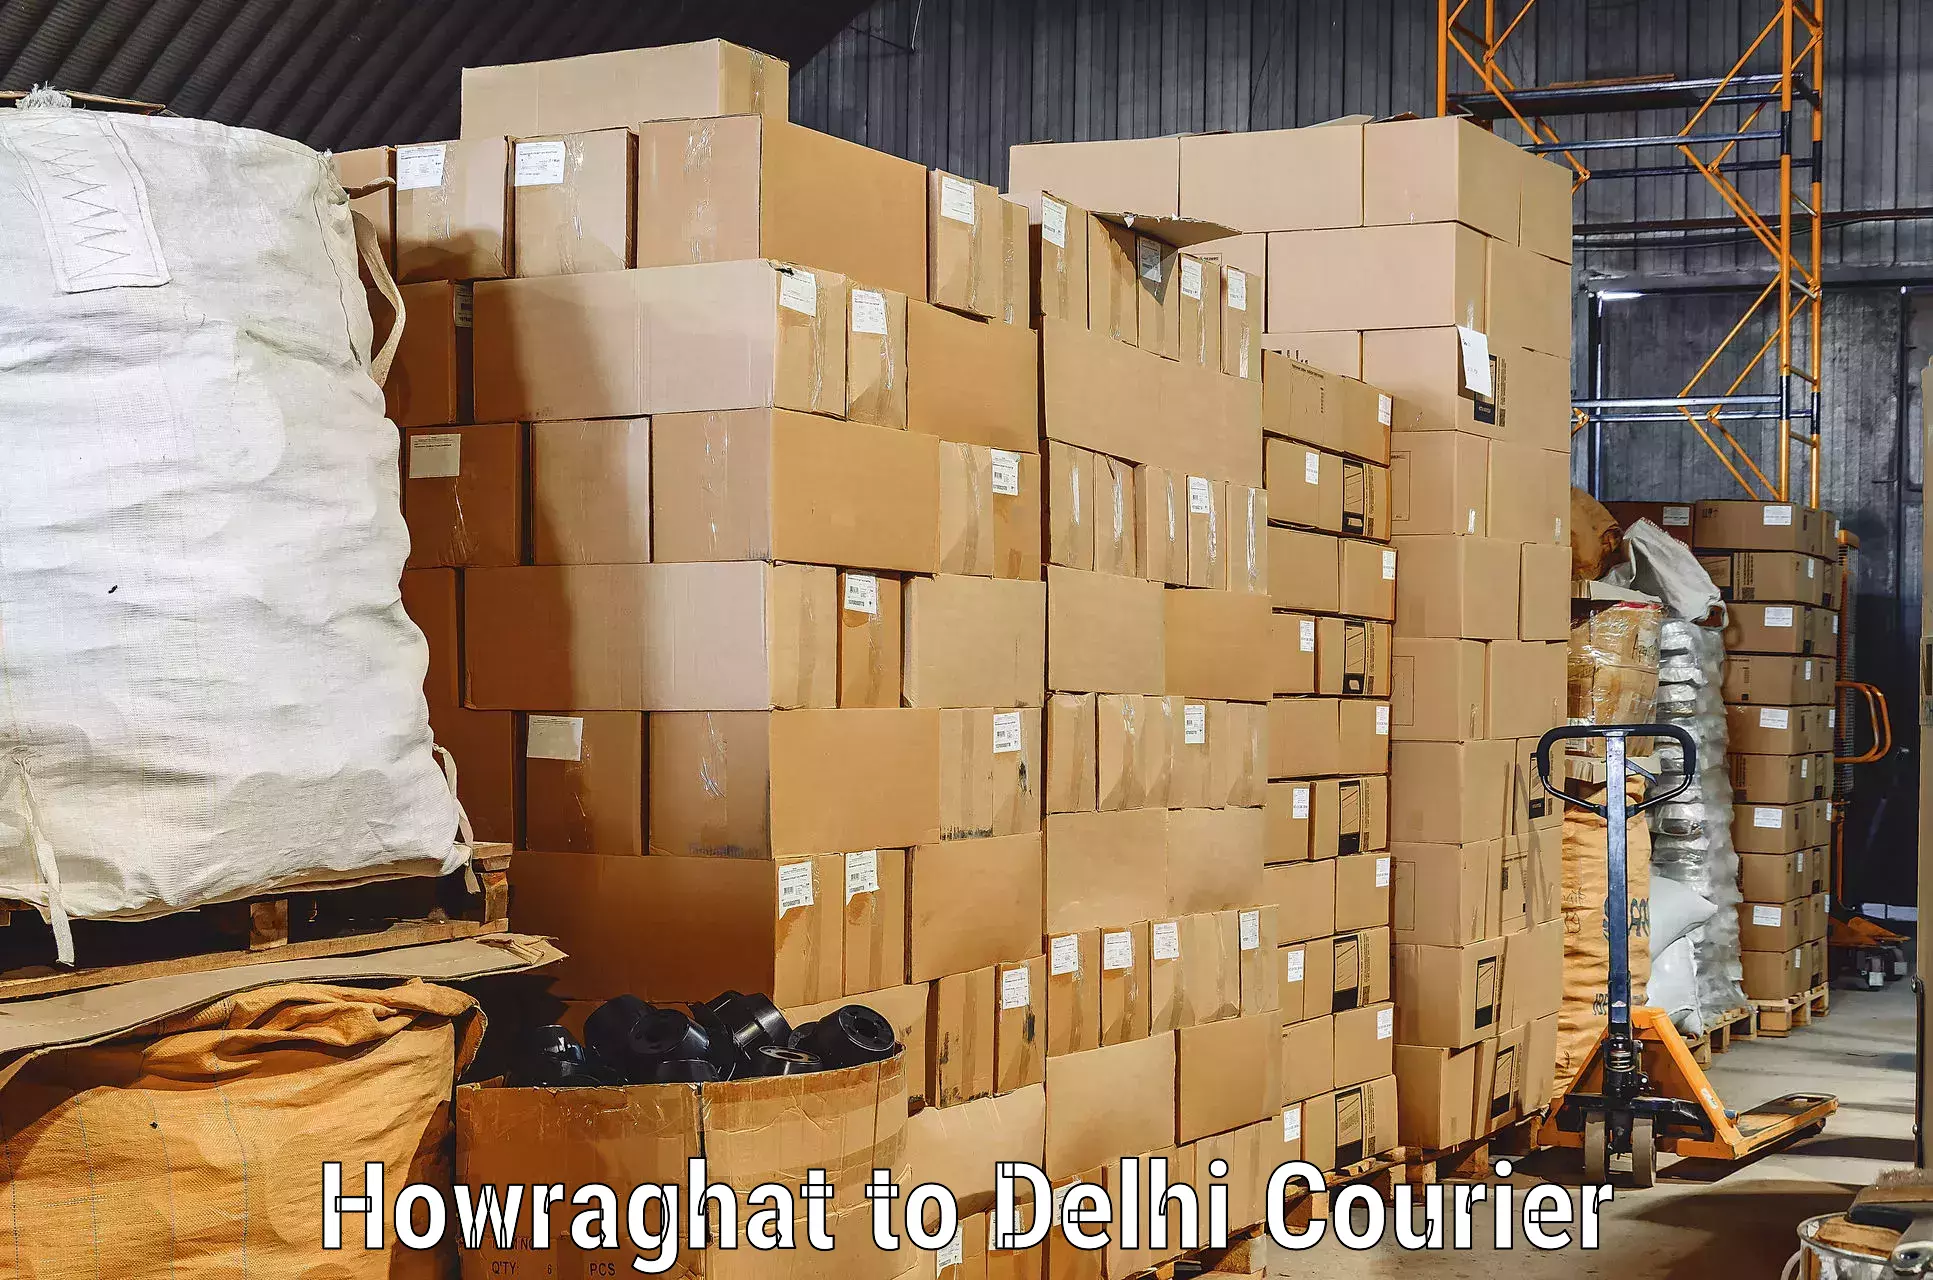 Safe home goods transport Howraghat to Kalkaji